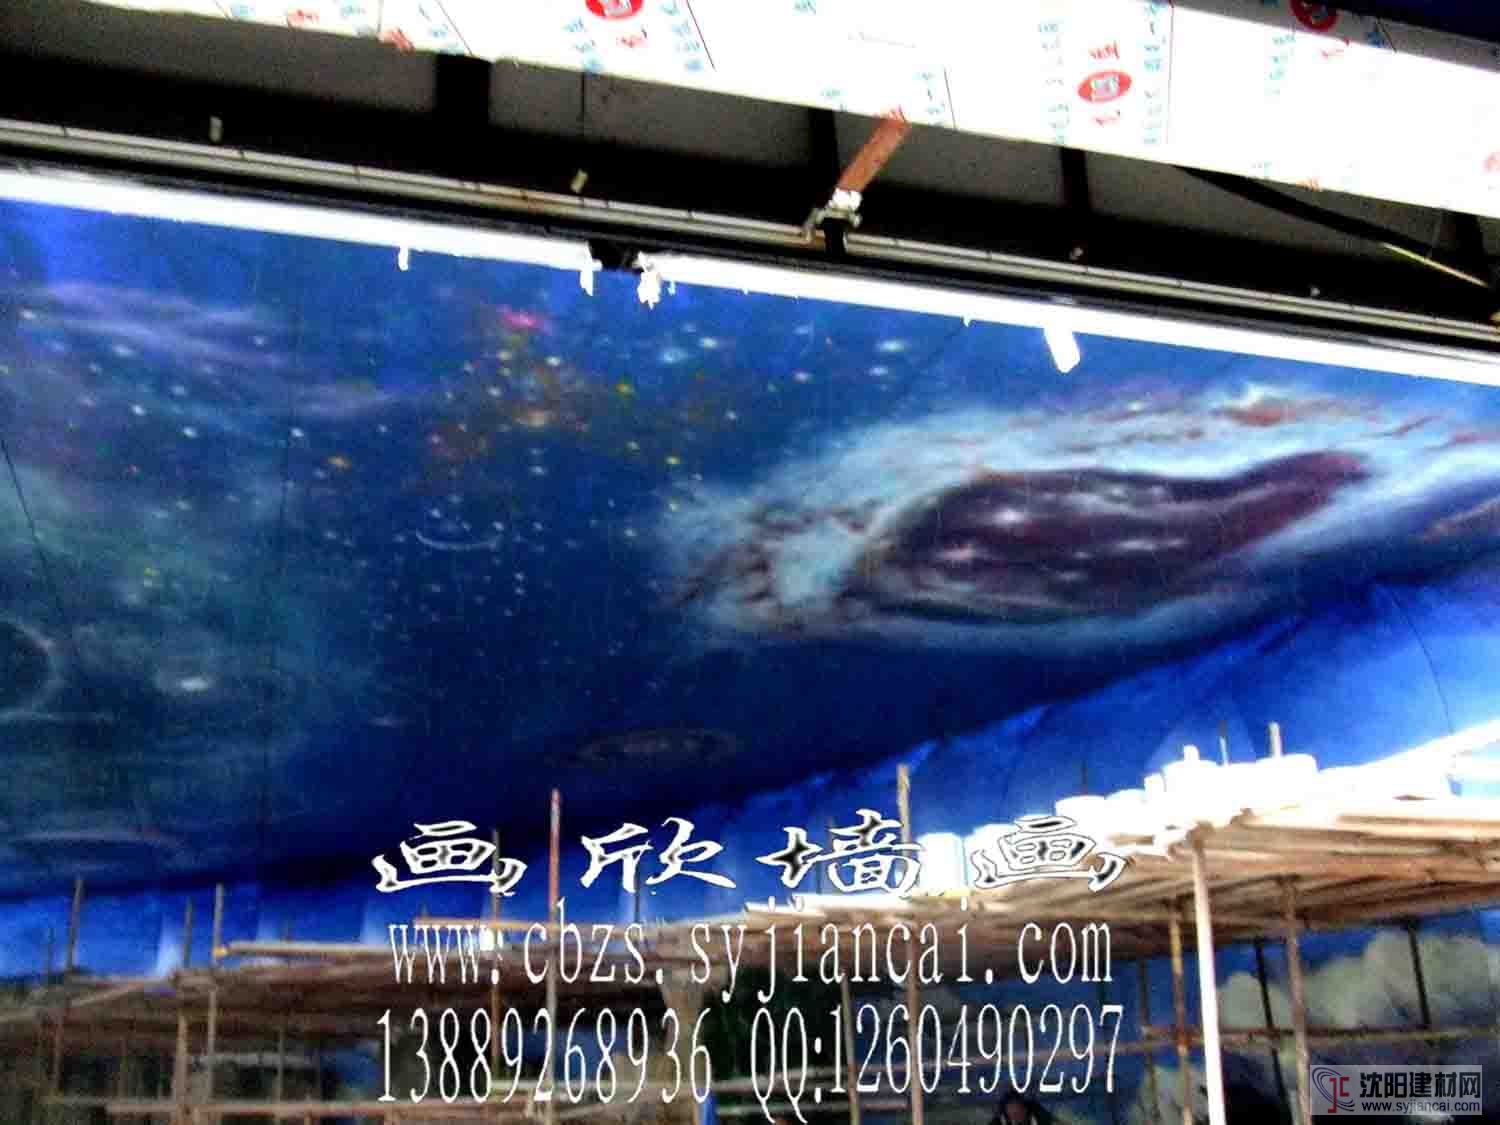 北京隐形画荧光画彩绘